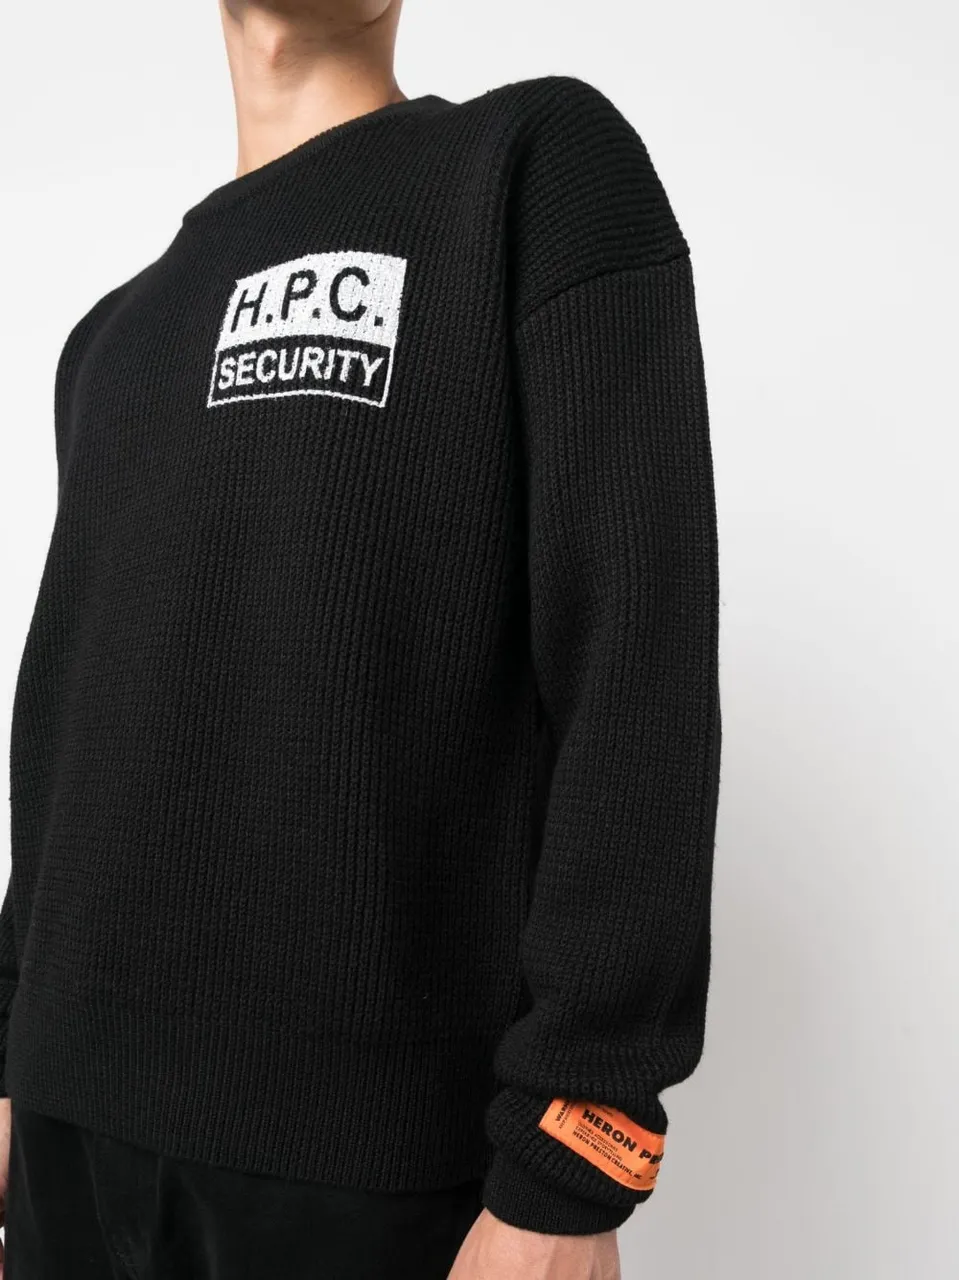 H.P.C. Security Pullover